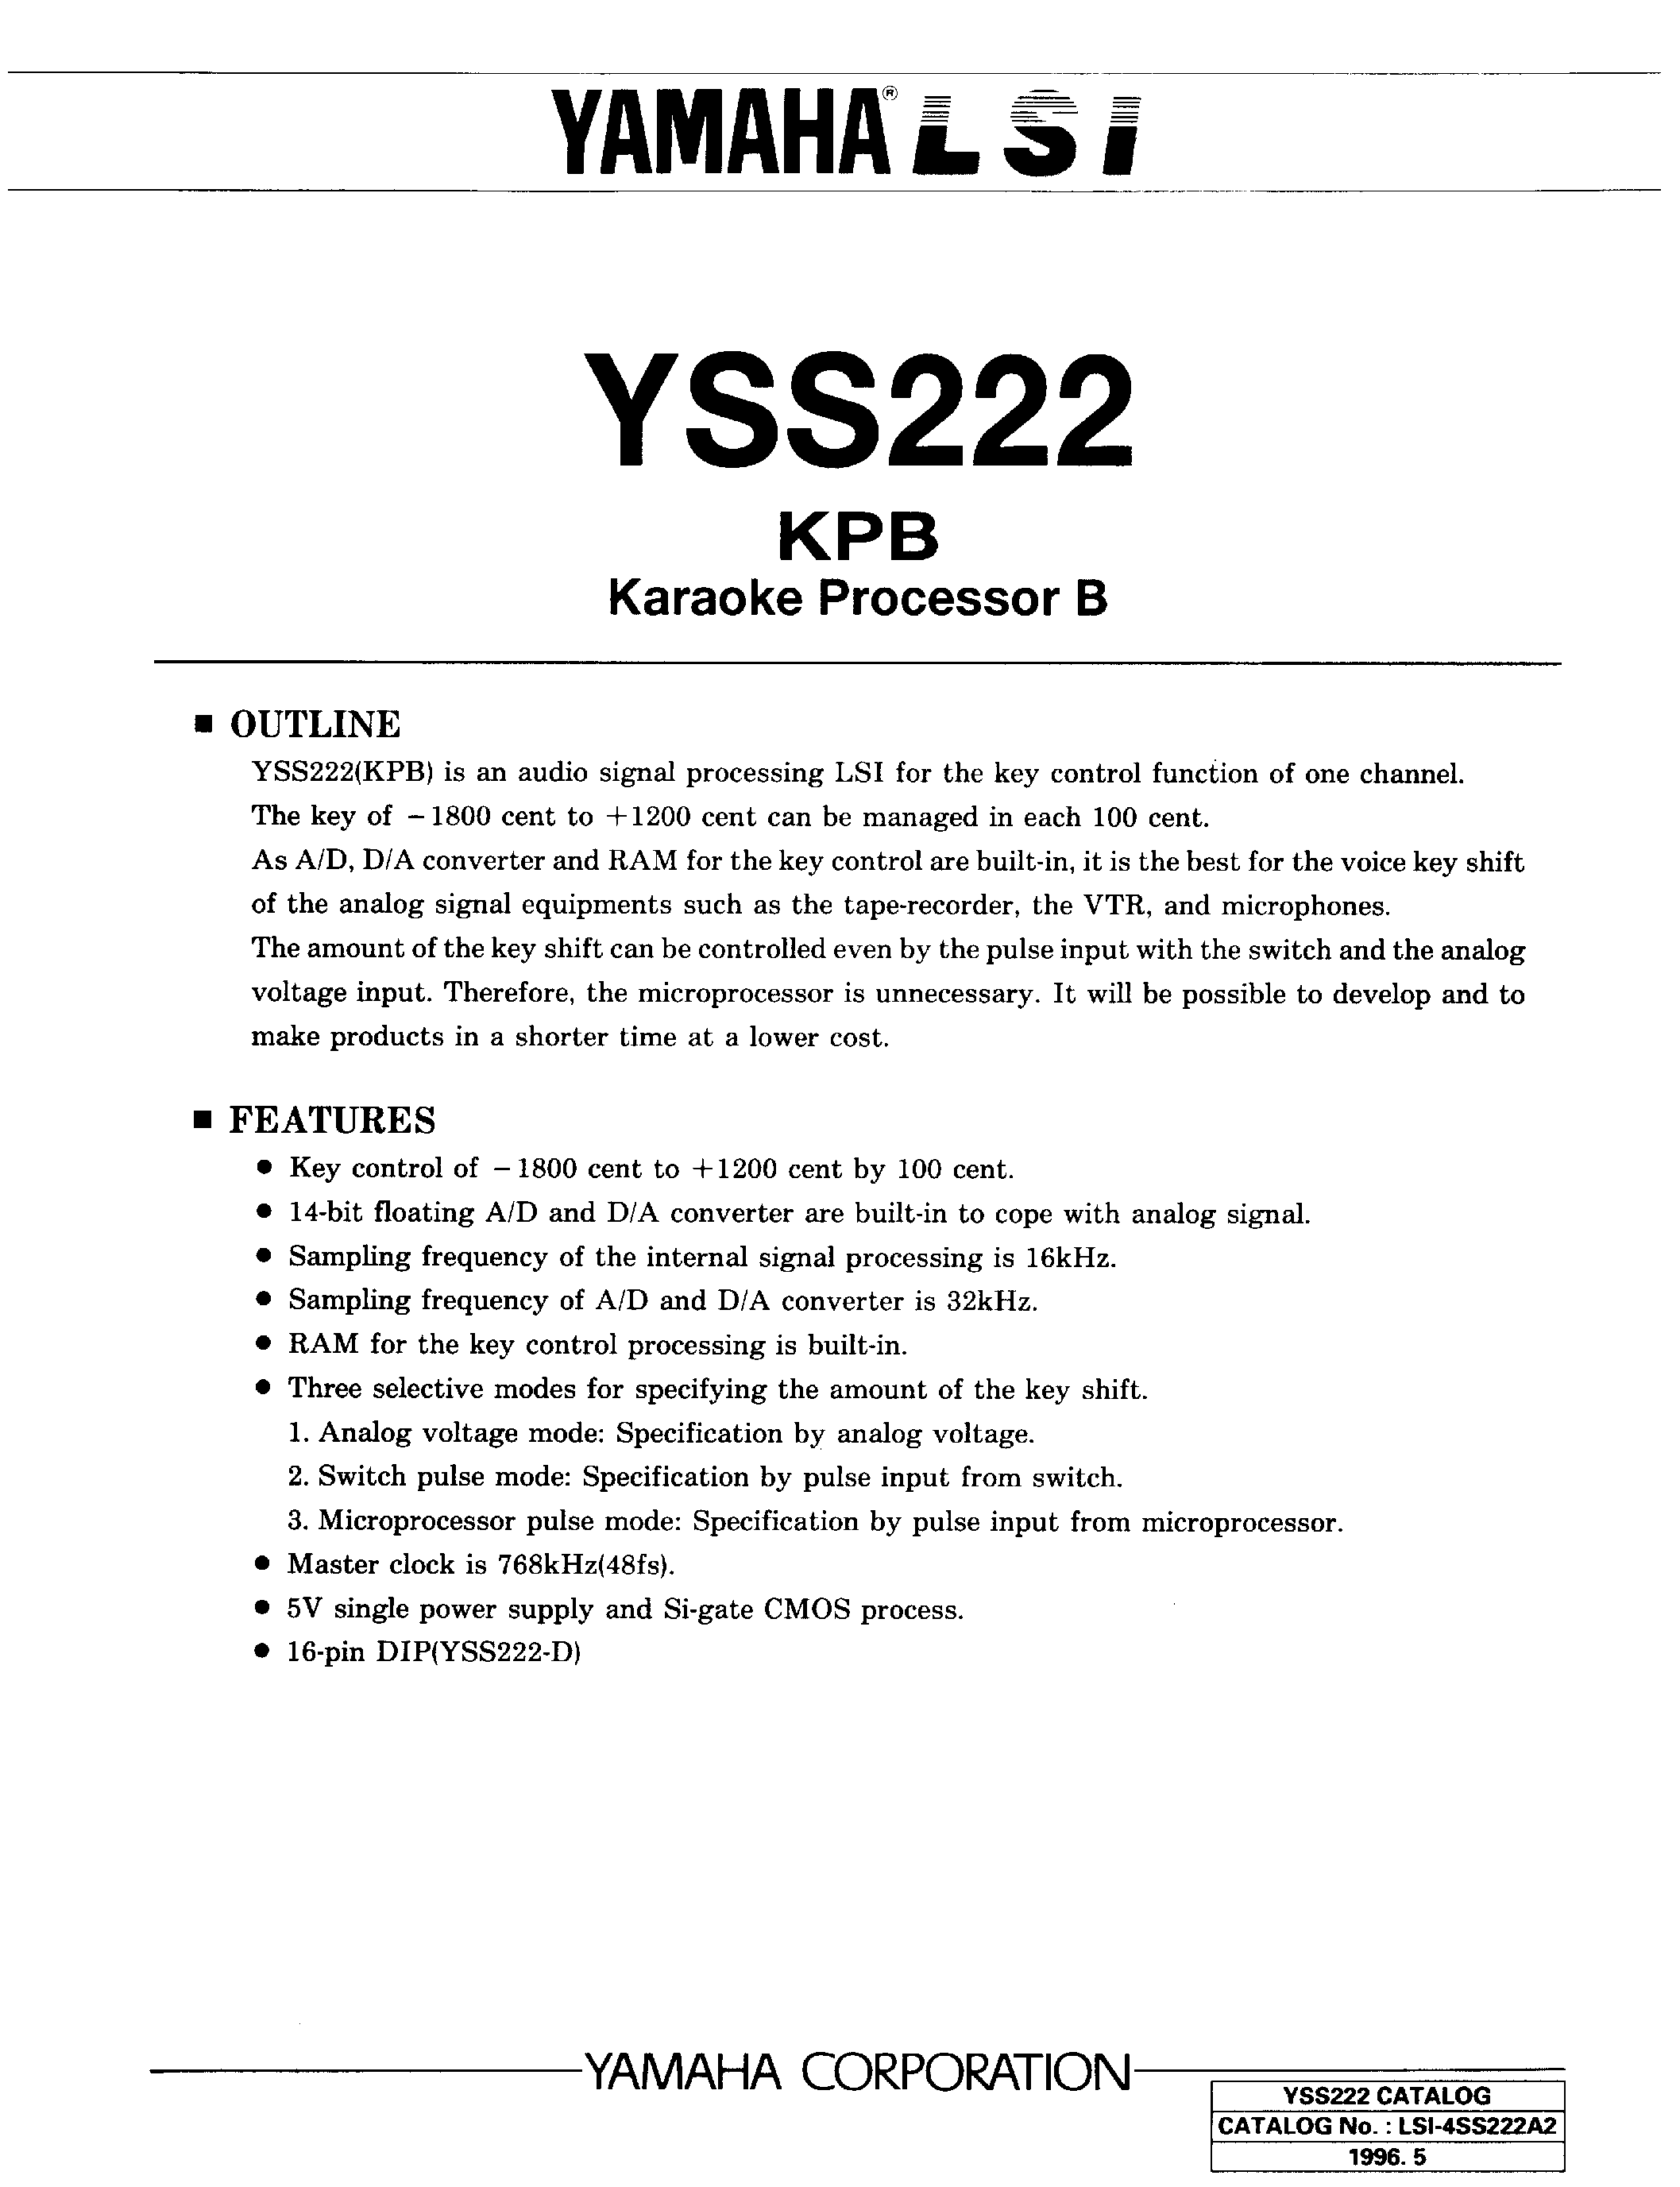 Даташит YSS222 - KPB KARAOKE PROCESSOR B страница 1